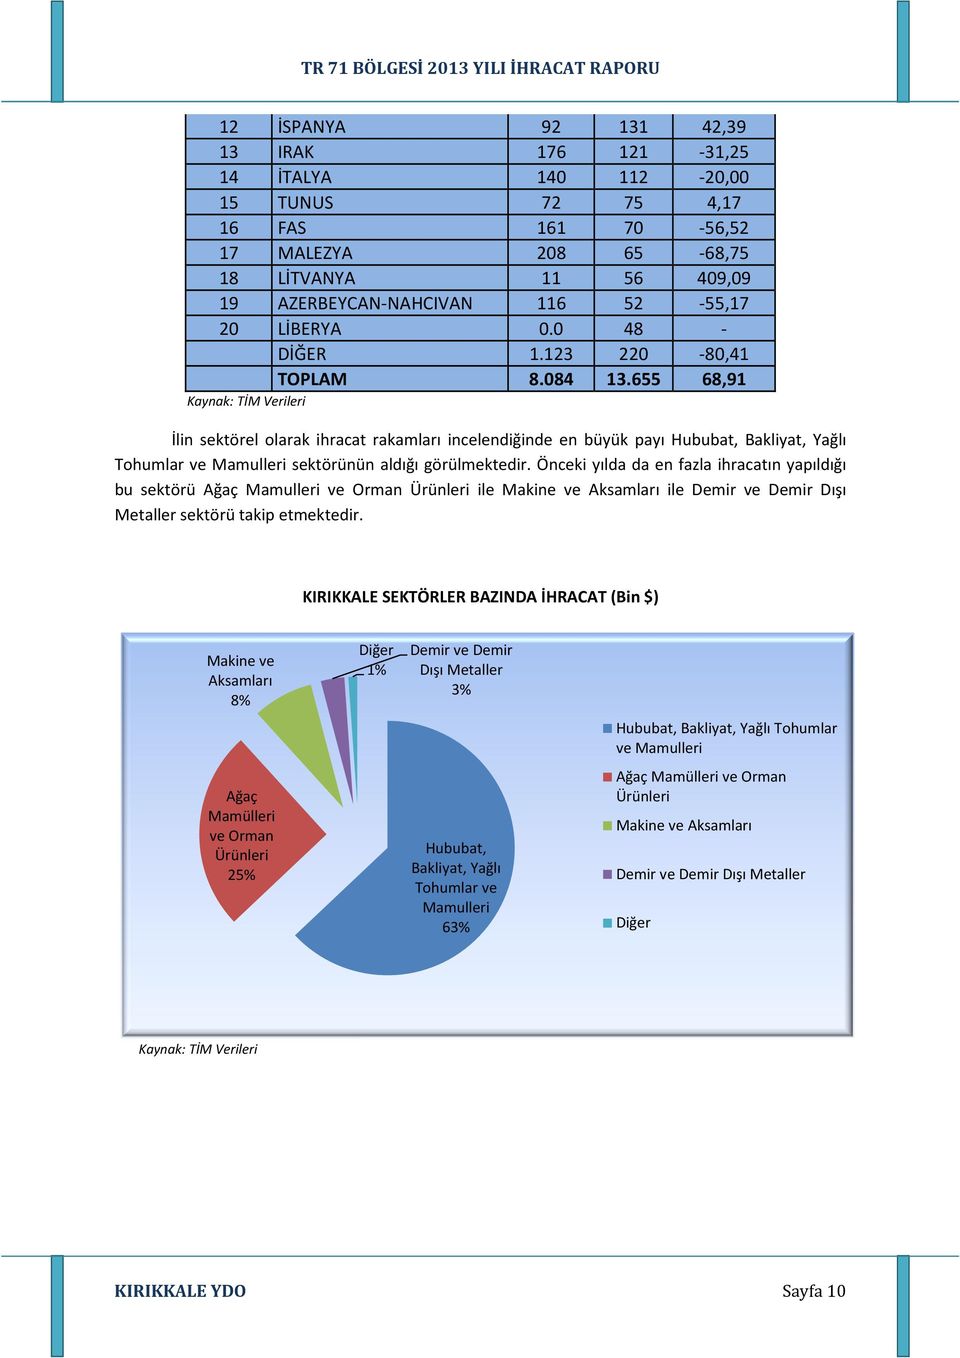 655 68,91 İlin sektörel olarak ihracat rakamları incelendiğinde en büyük payı Hububat, Bakliyat, Yağlı Tohumlar ve Mamulleri sektörünün aldığı görülmektedir.